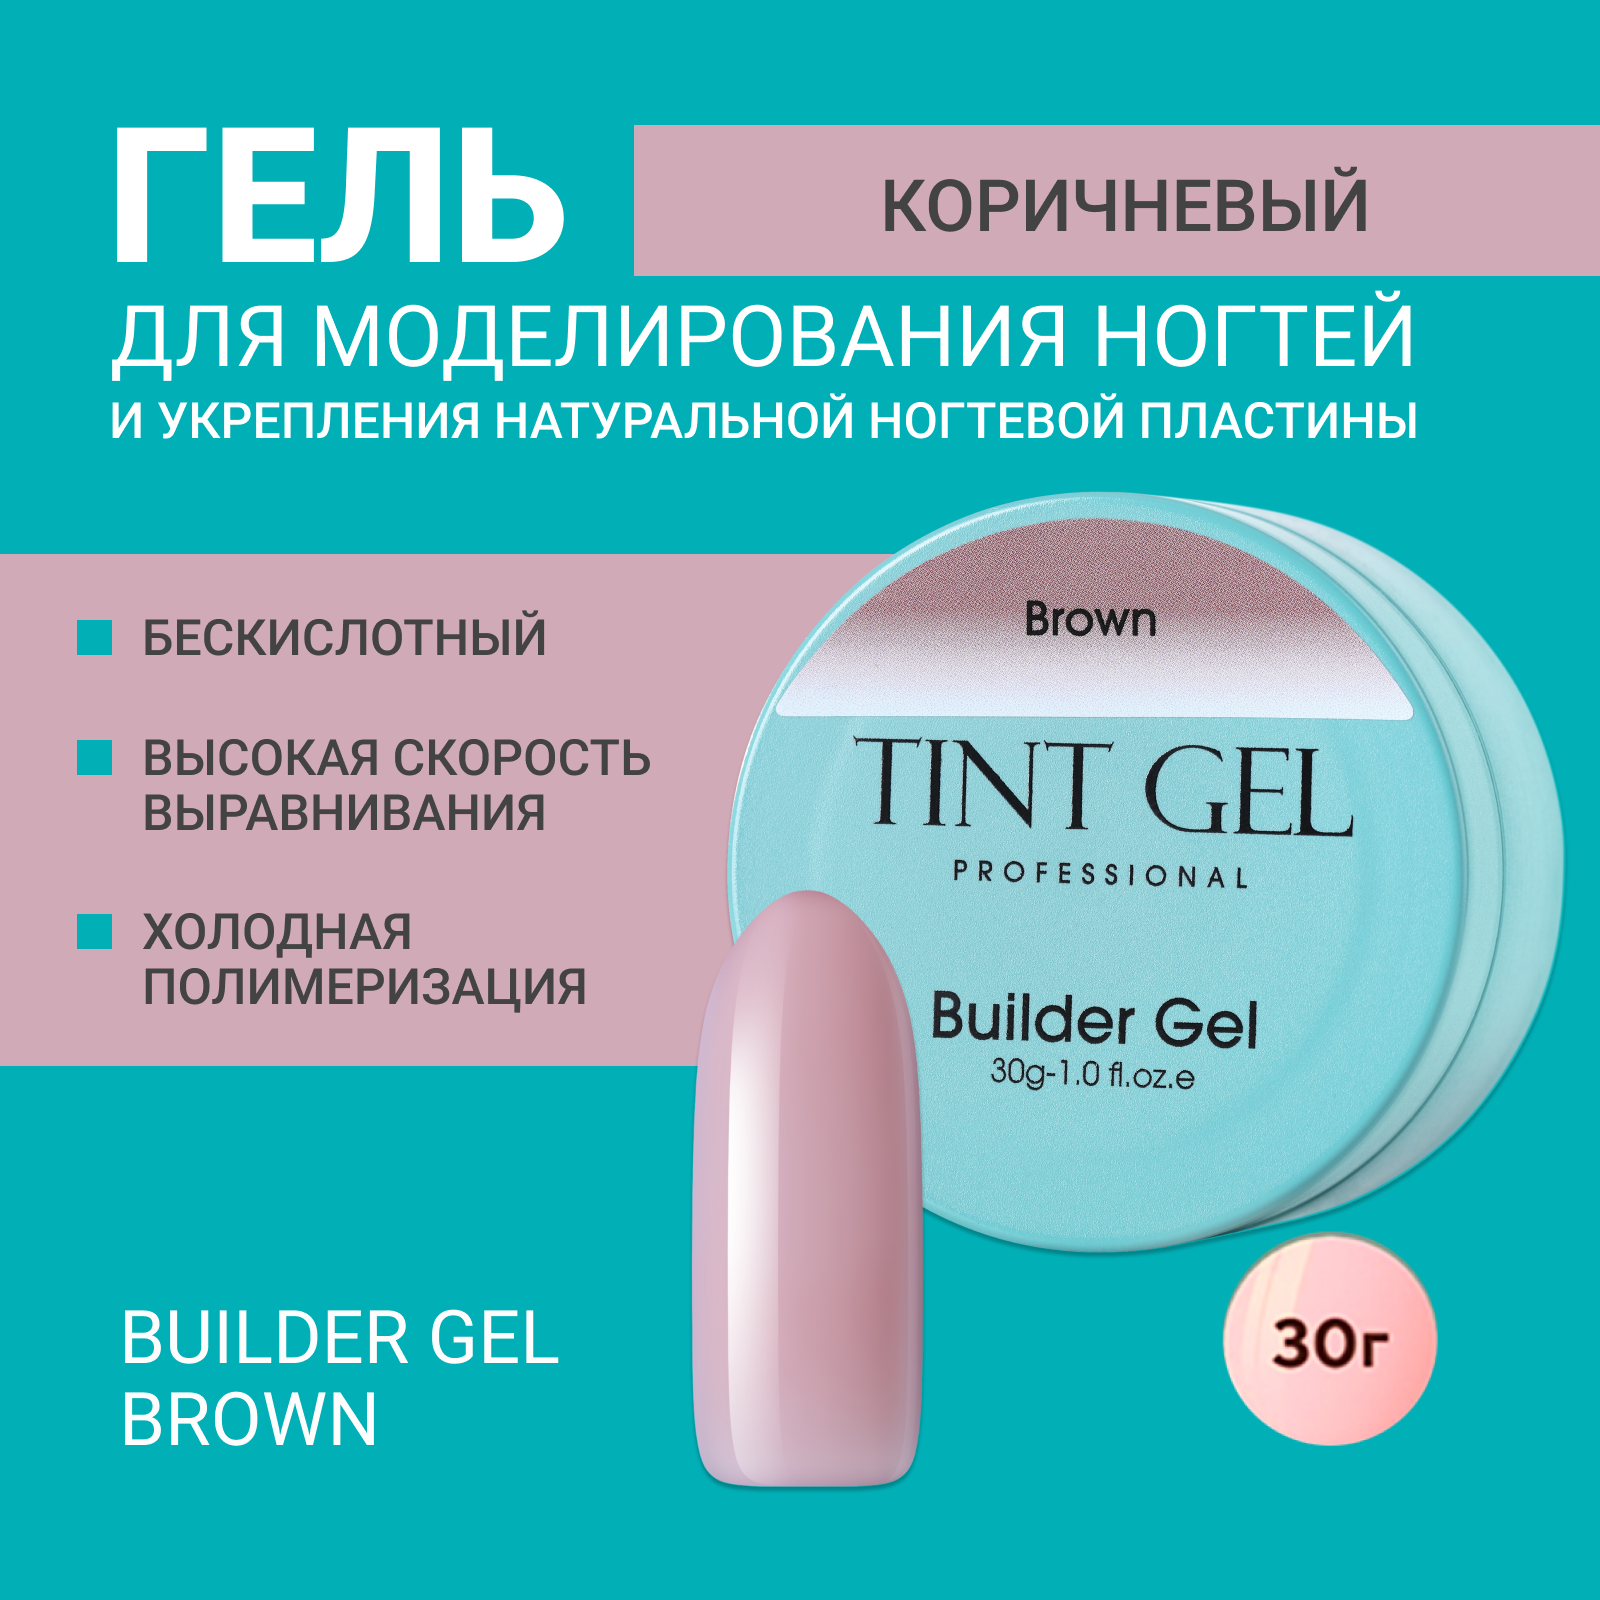 Гель Tint Gel Professional Builder gel Brown 30 г